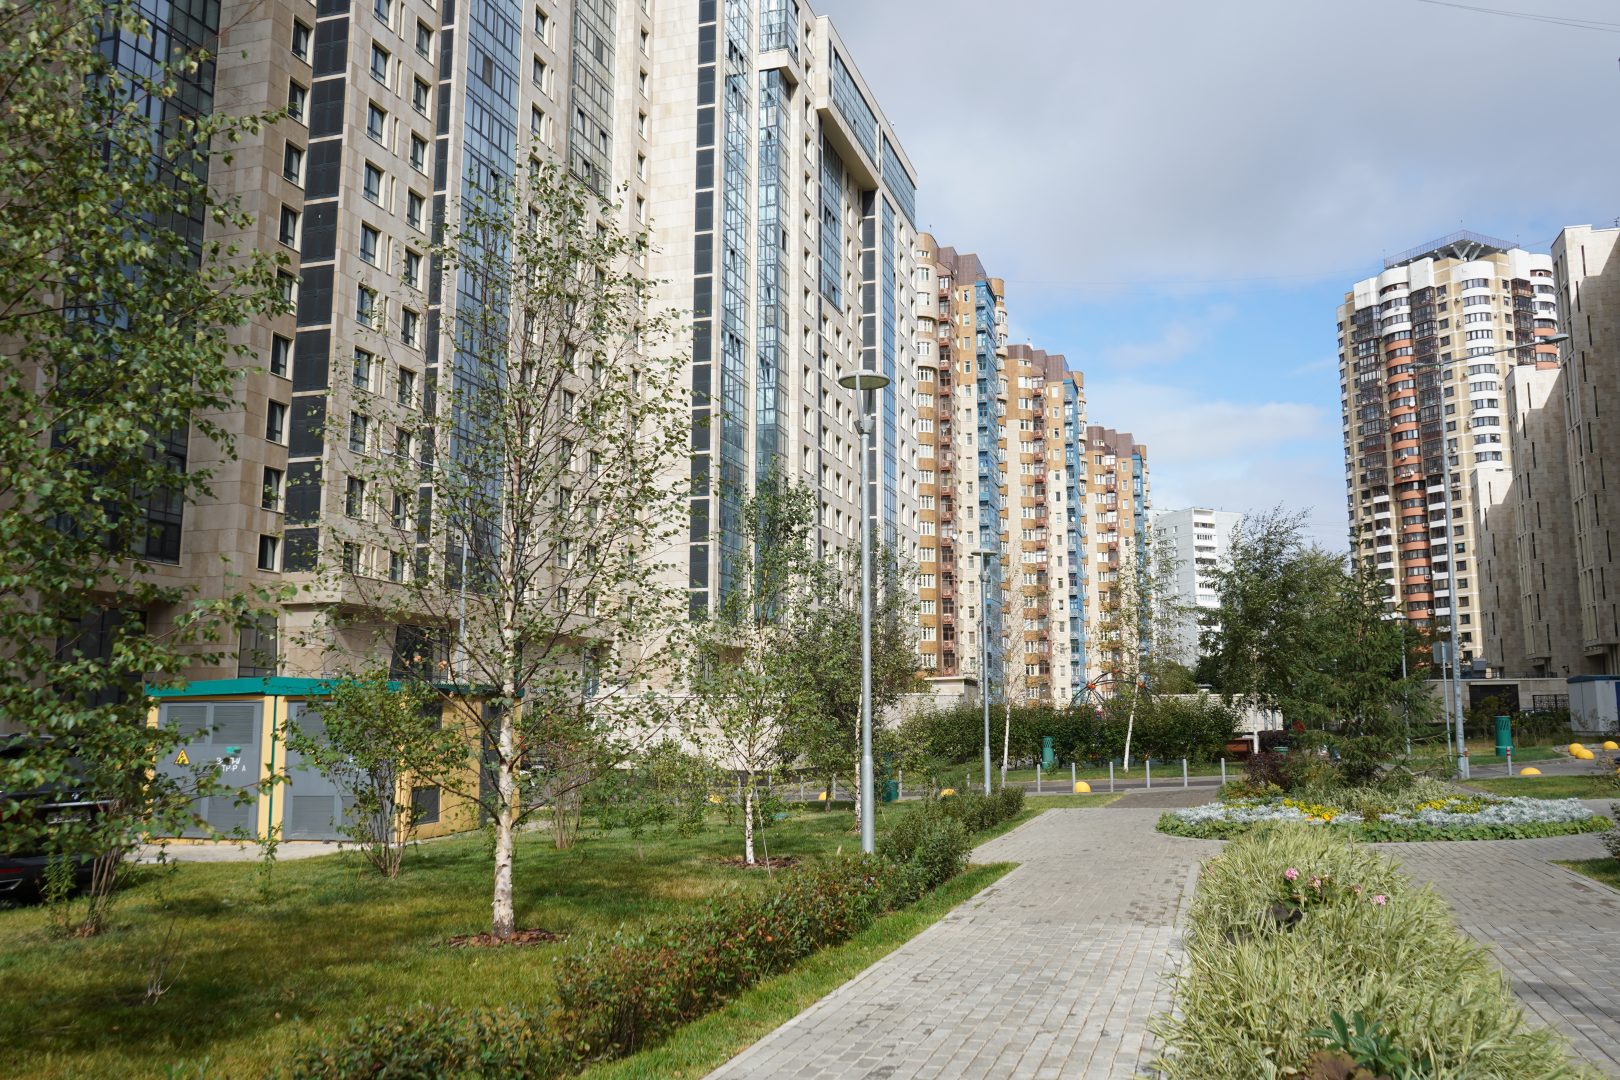 Архитекторы предложили новый концепт жилого района. Фото: Анна Быкова, «Вечерняя Москва»